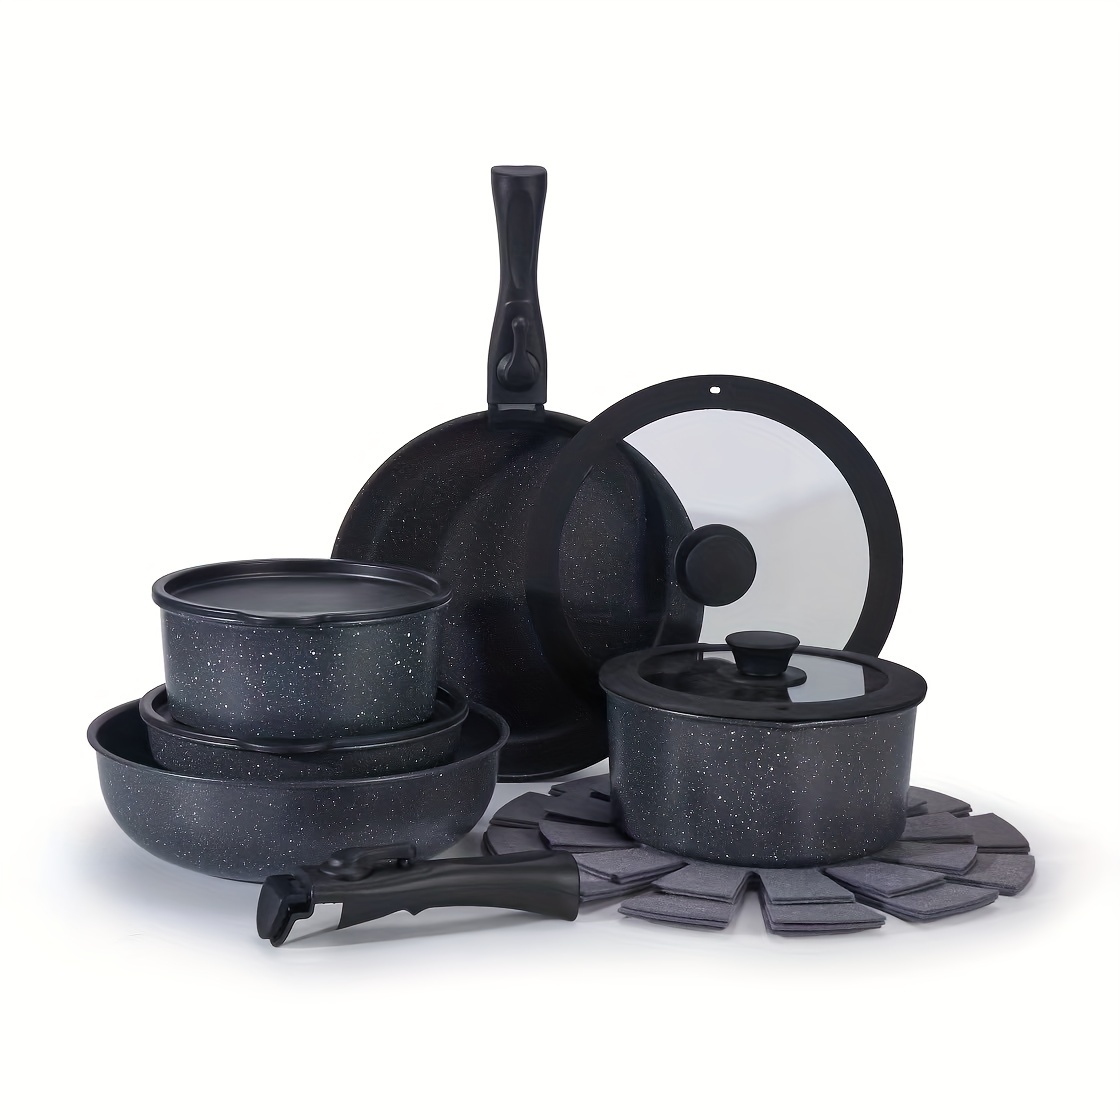 

15 Pcs Detachable Handle Pots And Pans Set Nonstick, White Black Granite Induction Kitchen Cookware Set, Non Stick Cooking Set W/frying Pans & Saucepans